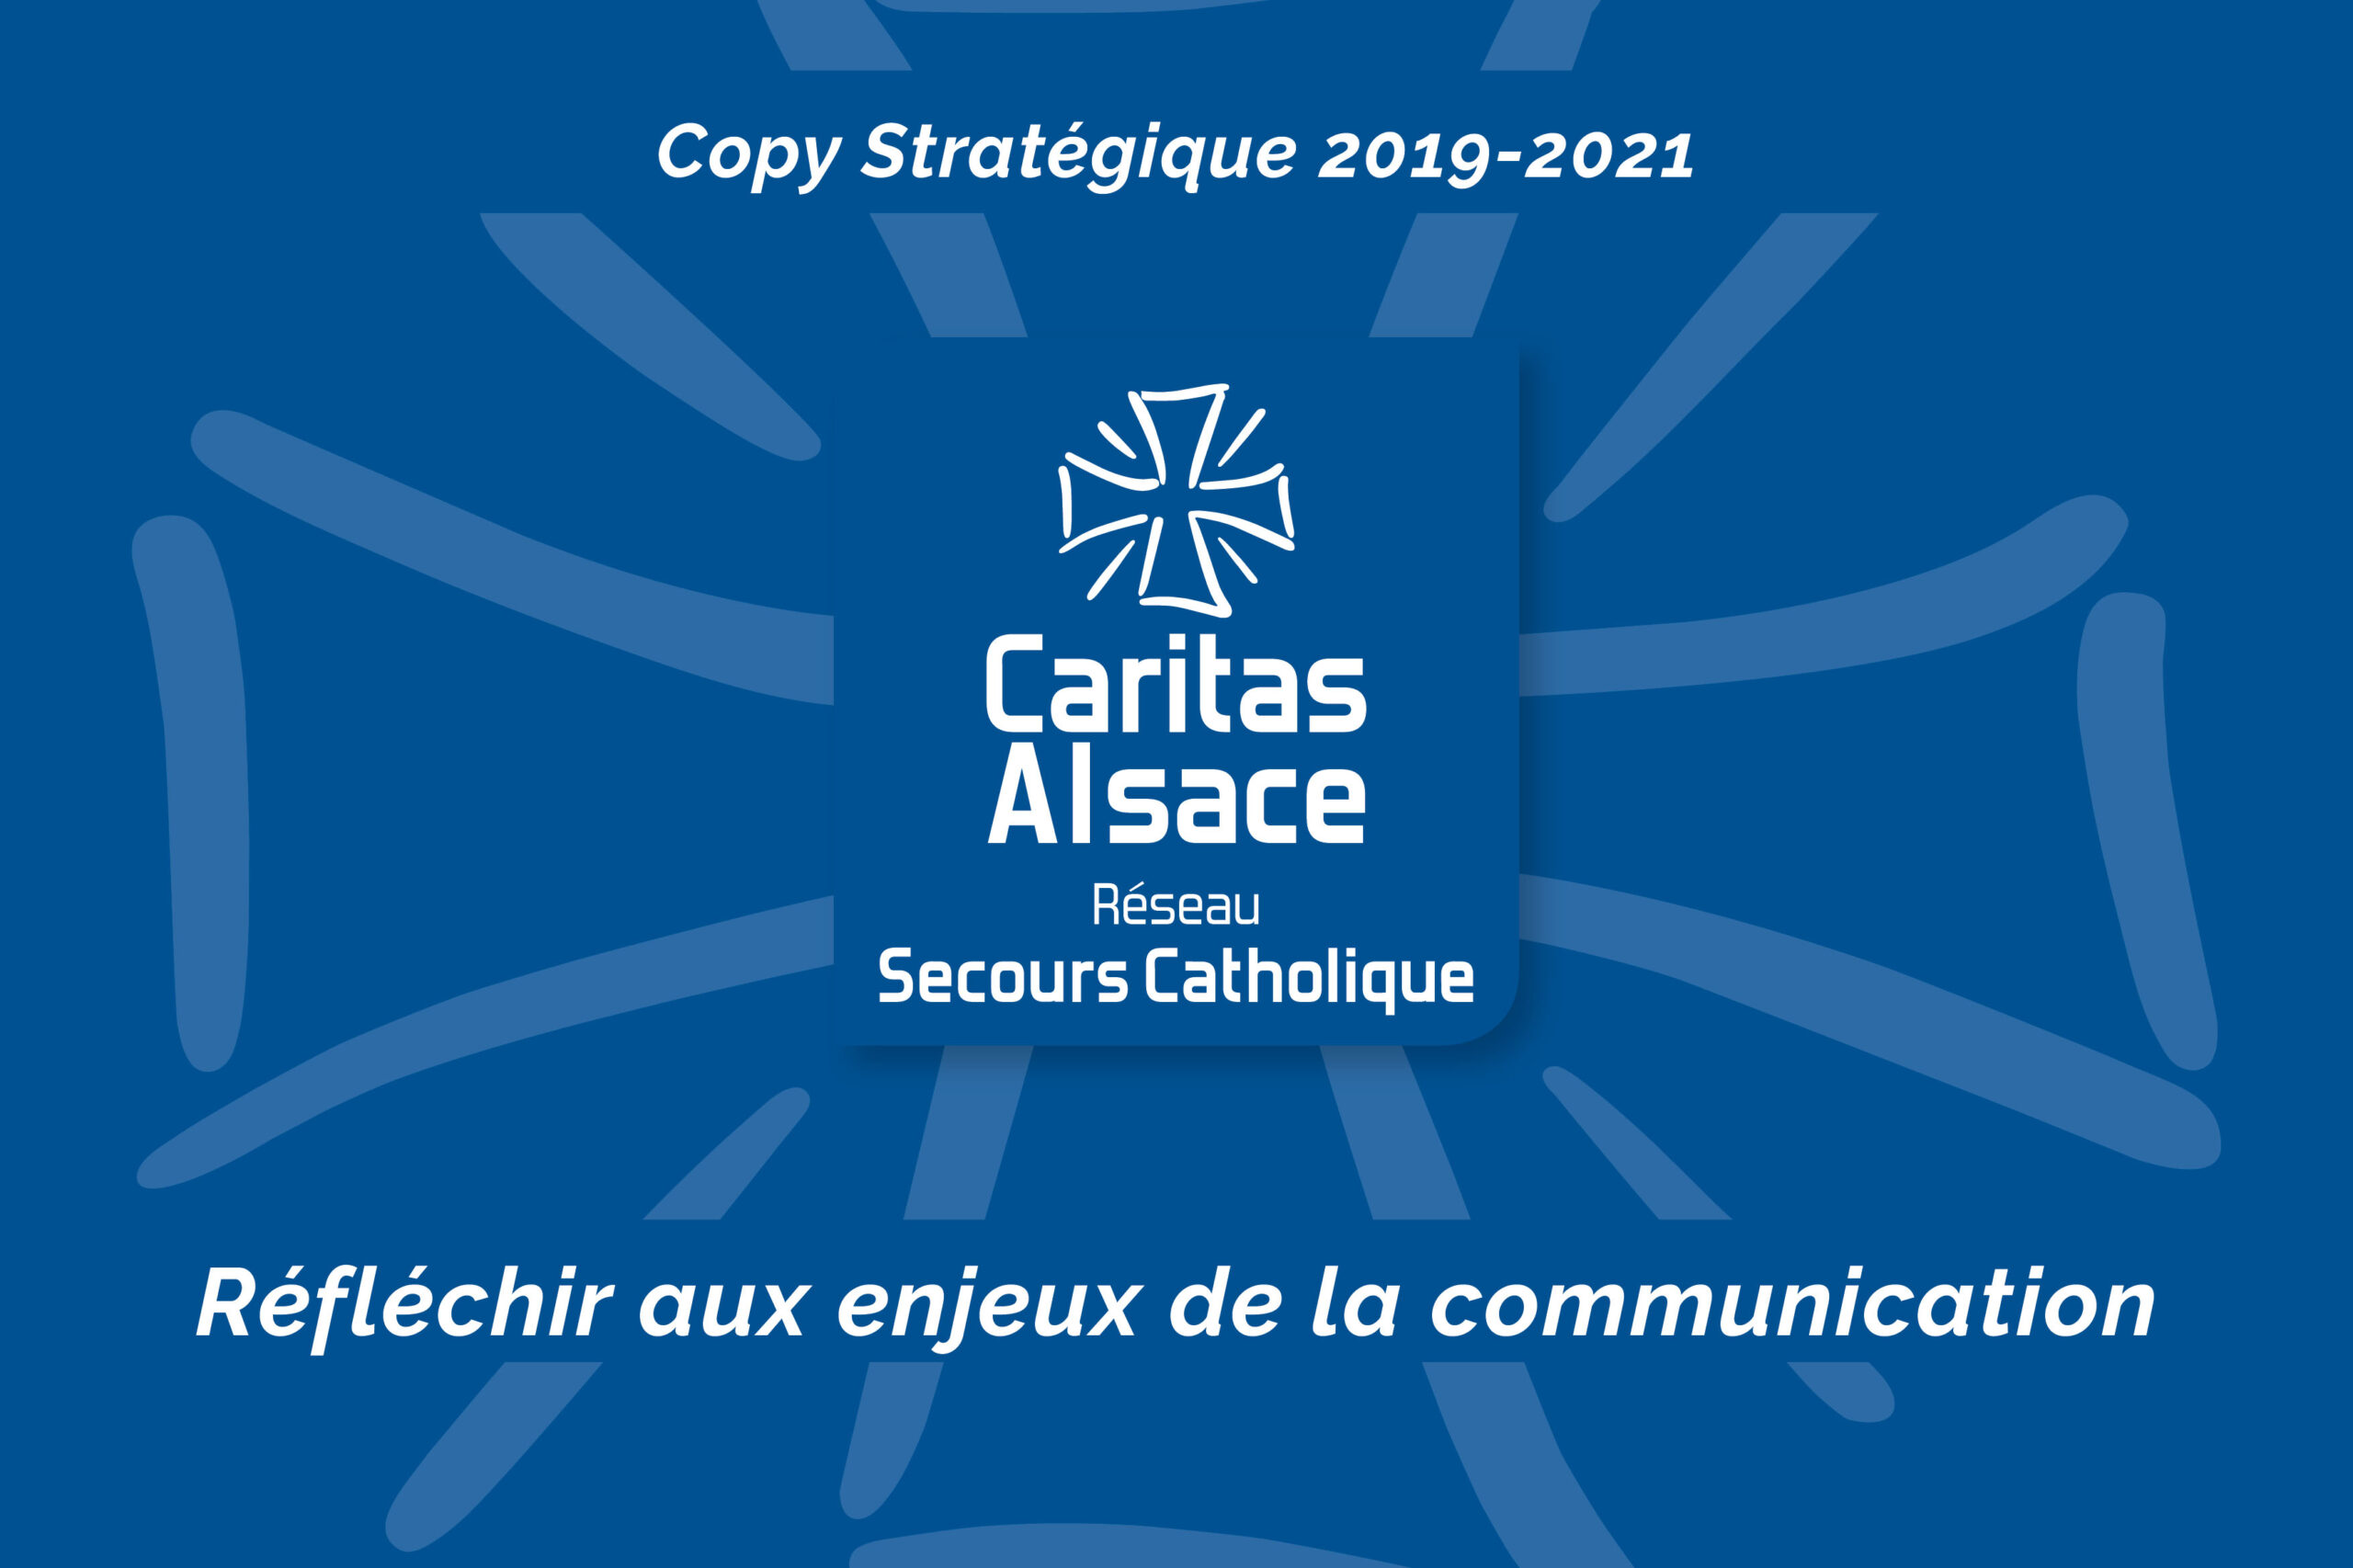 Caritas Alsace stratégie de communication